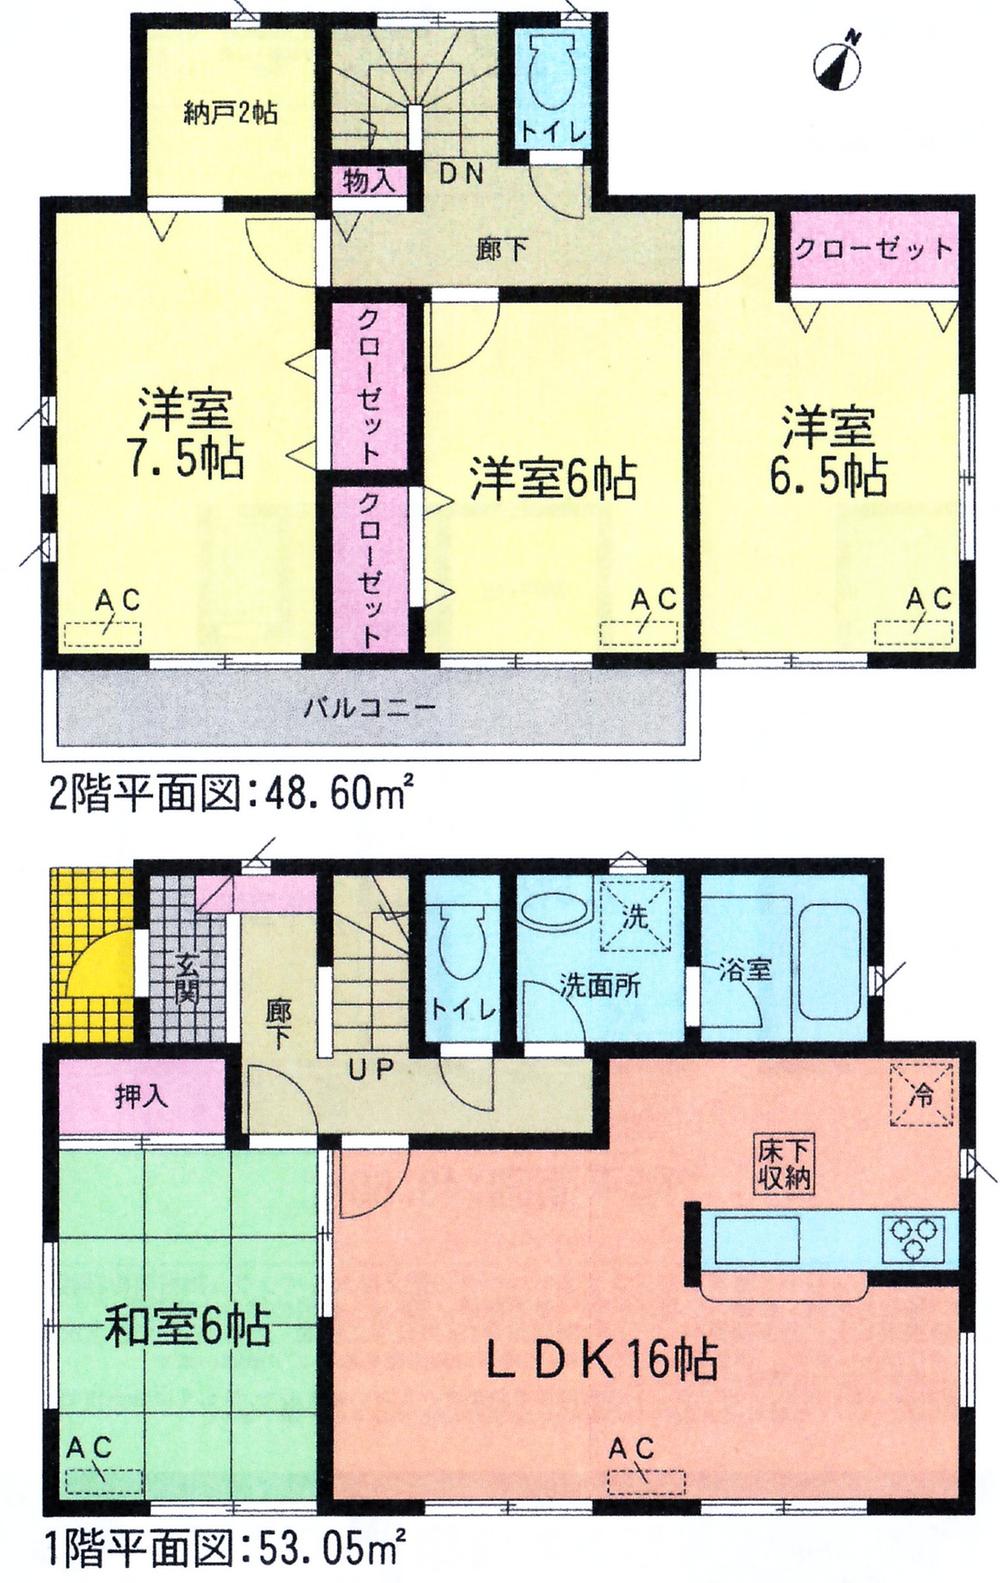 Floor plan. 30,900,000 yen, 4LDK + S (storeroom), Land area 169.94 sq m , Building area 101.85 sq m